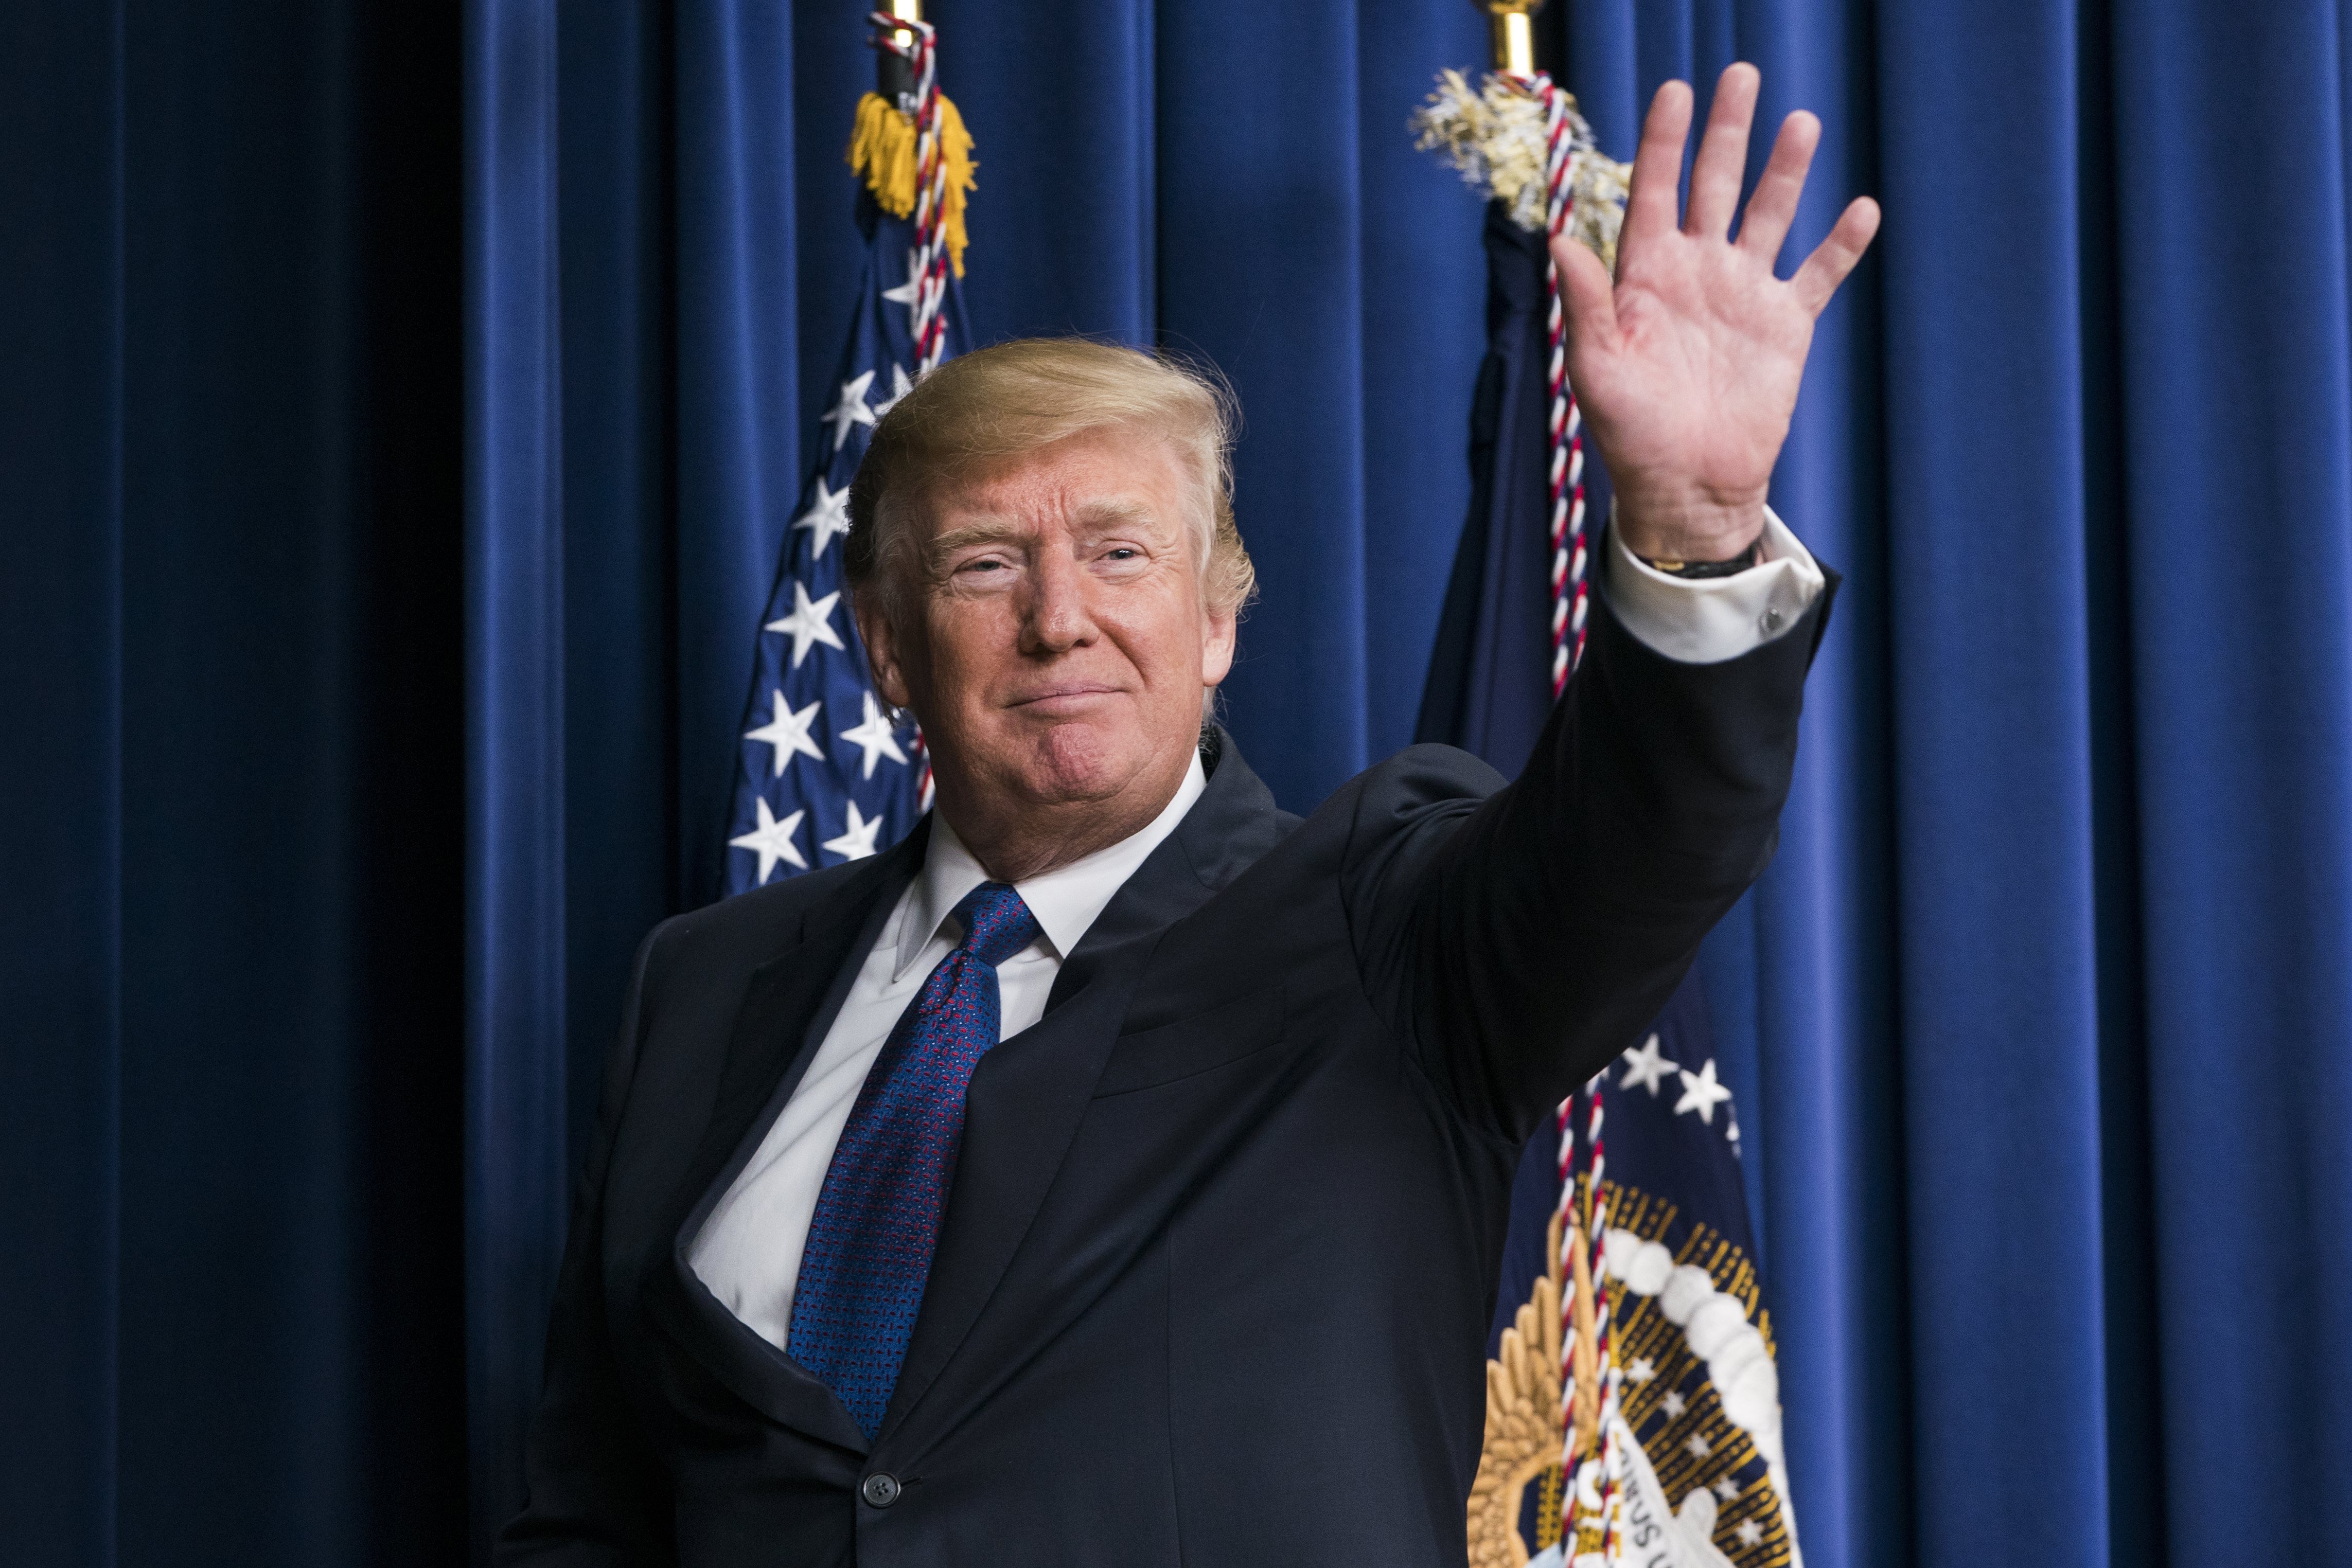 Trump lliura els polèmics premis 'Fake News' als mitjans crítics amb ell